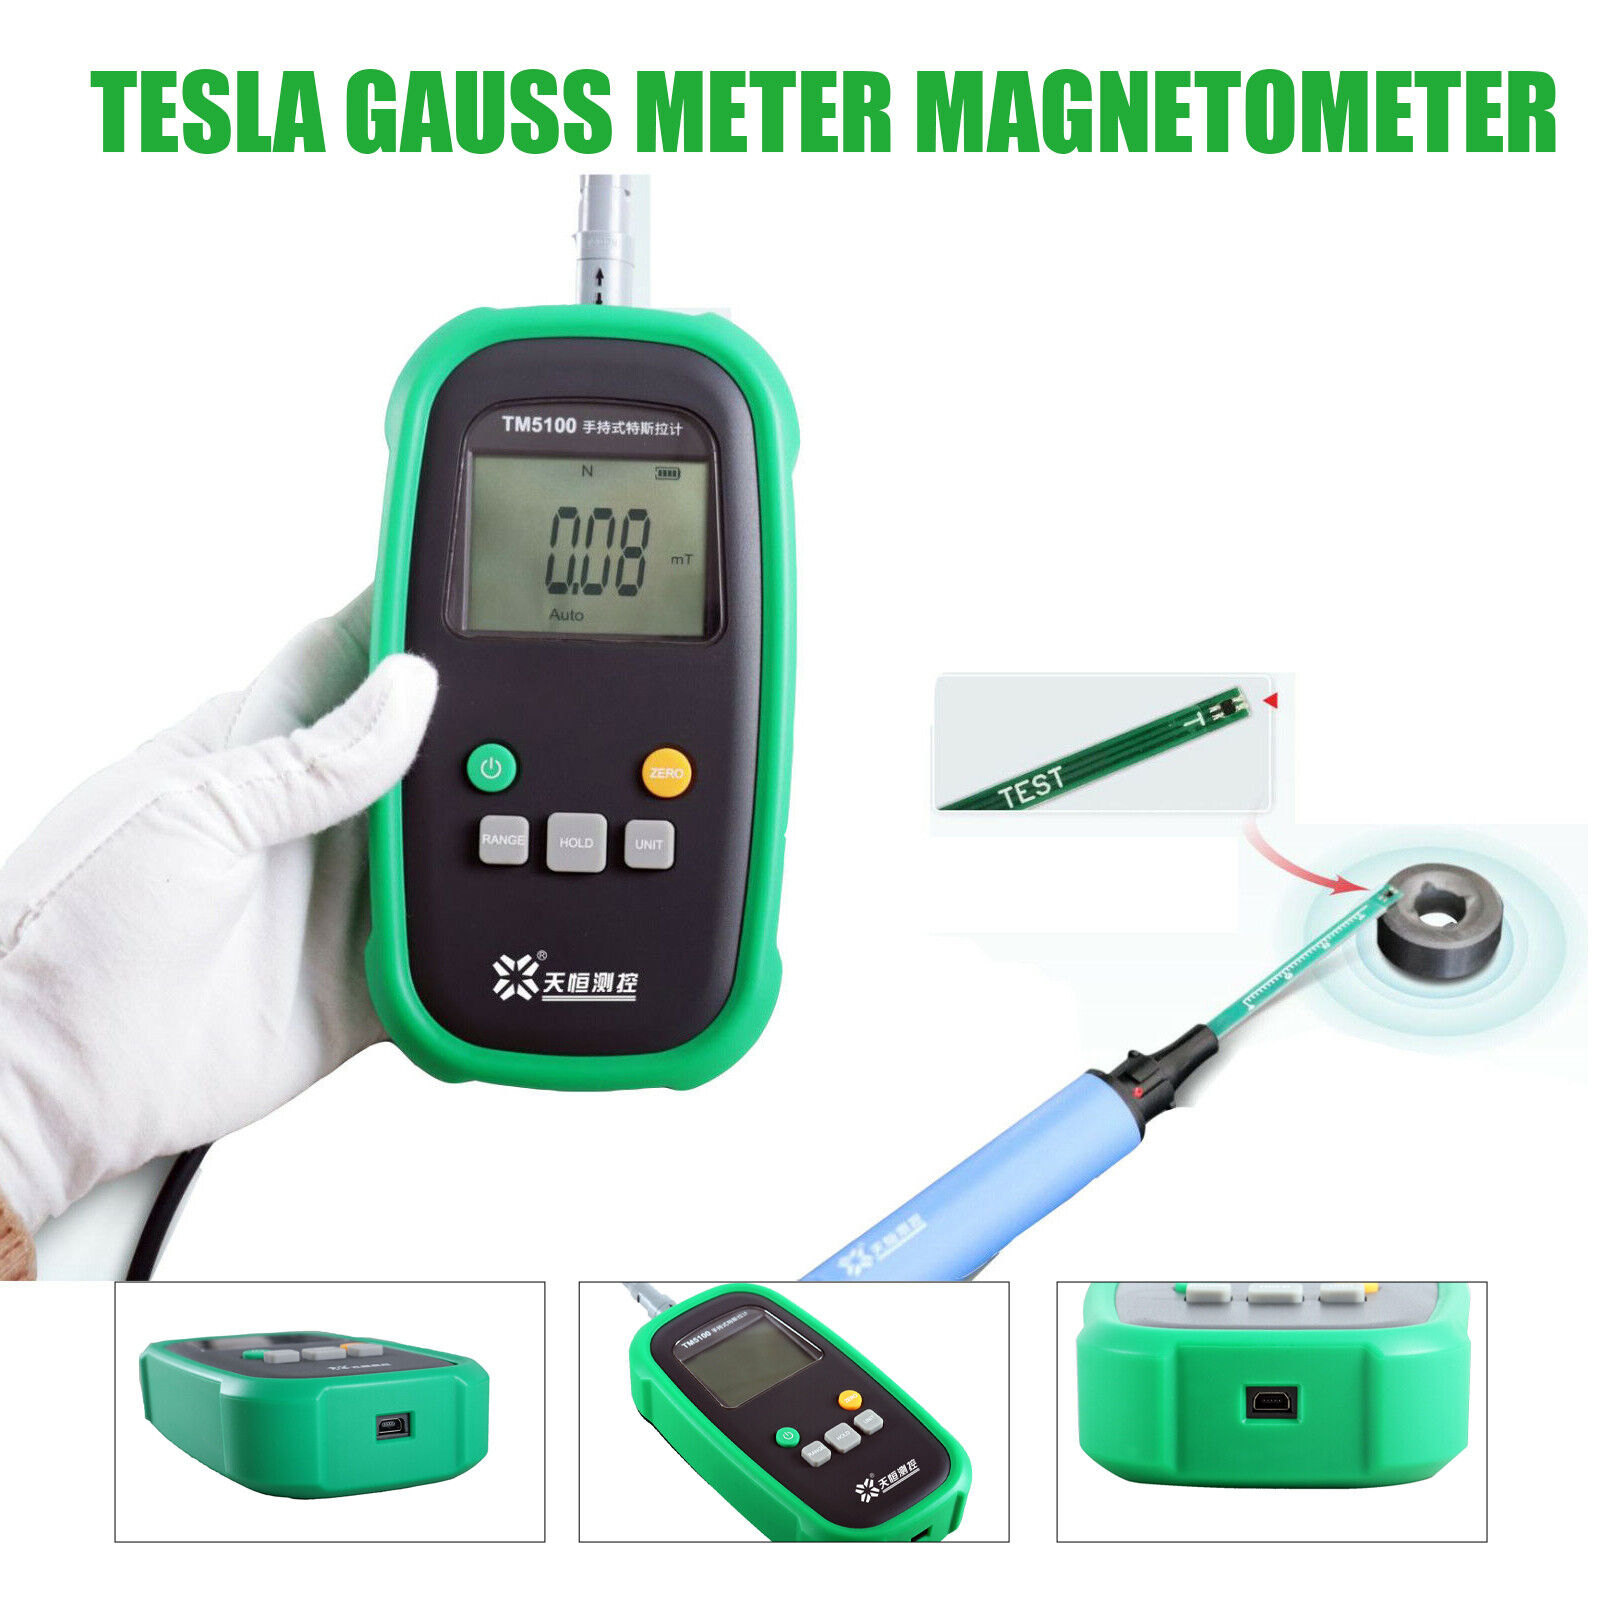 Handheld Tesla Meter Tester Gauss Meter Gaussmeter Digital Magnetic Field Tester